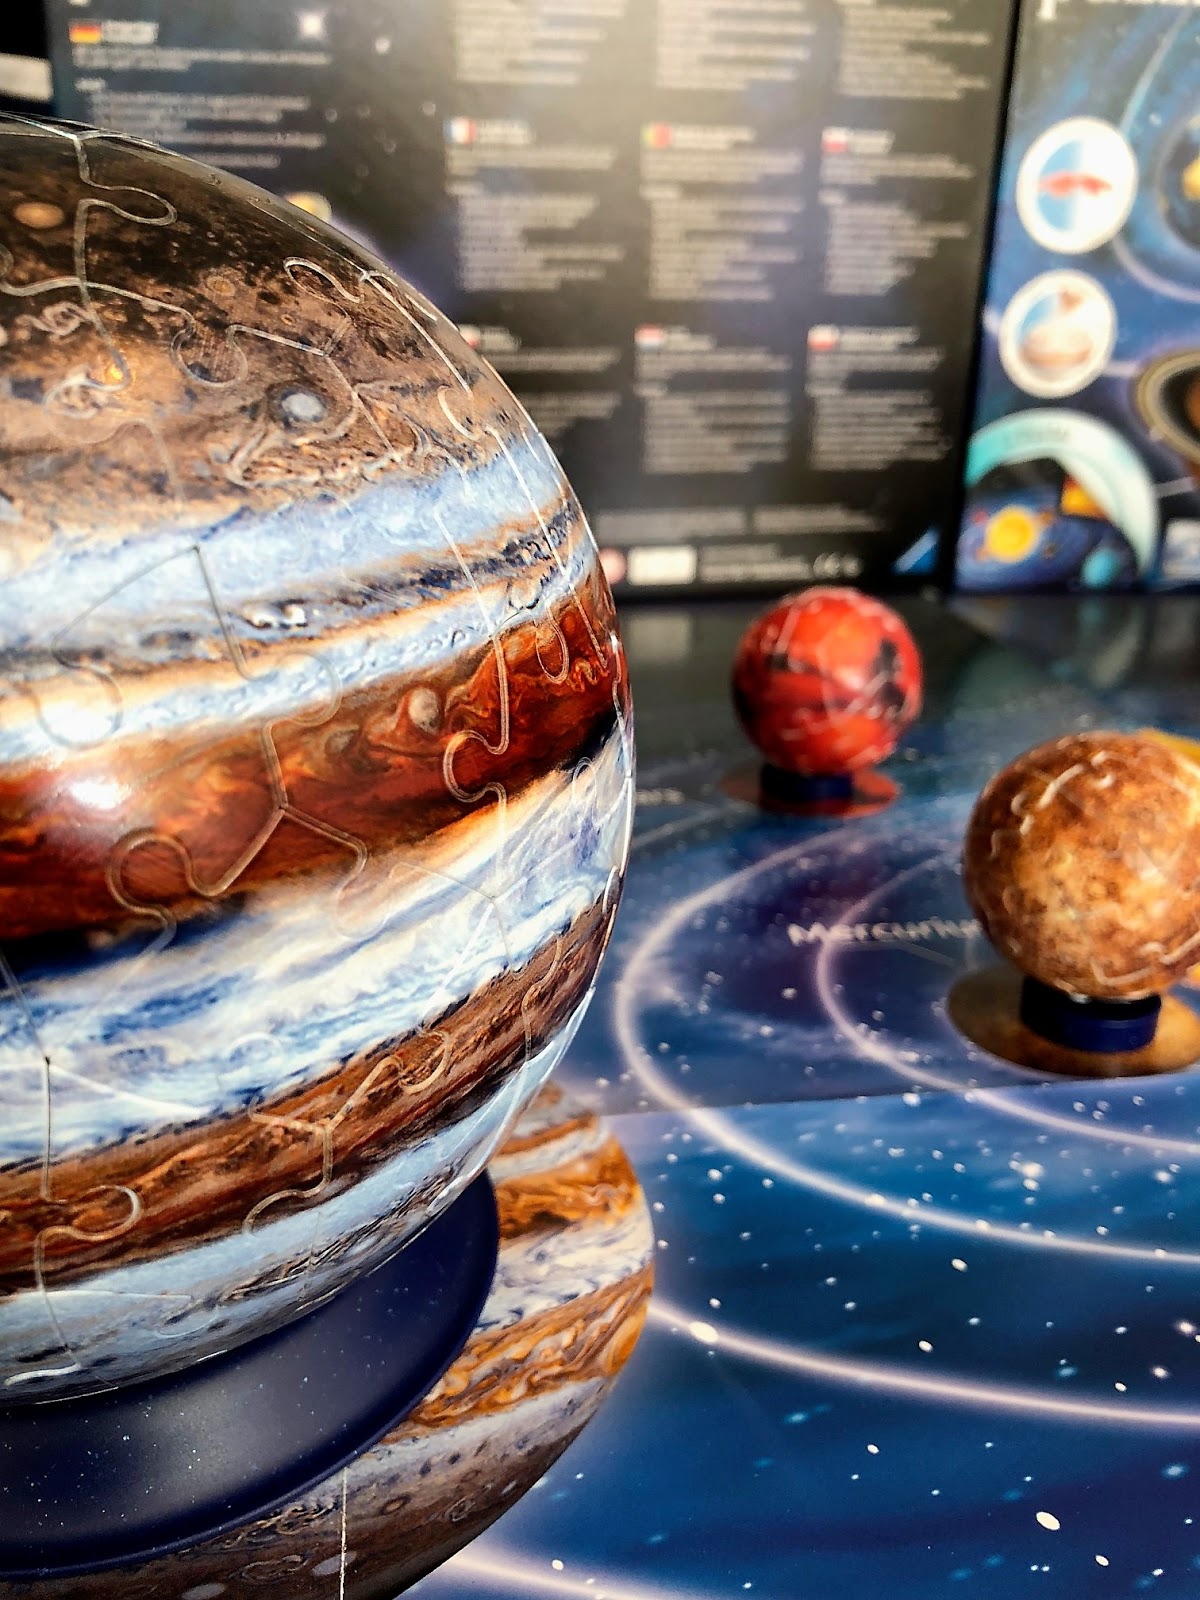 Ravensburger 3D puzzle 8 planètes, 522 pièces